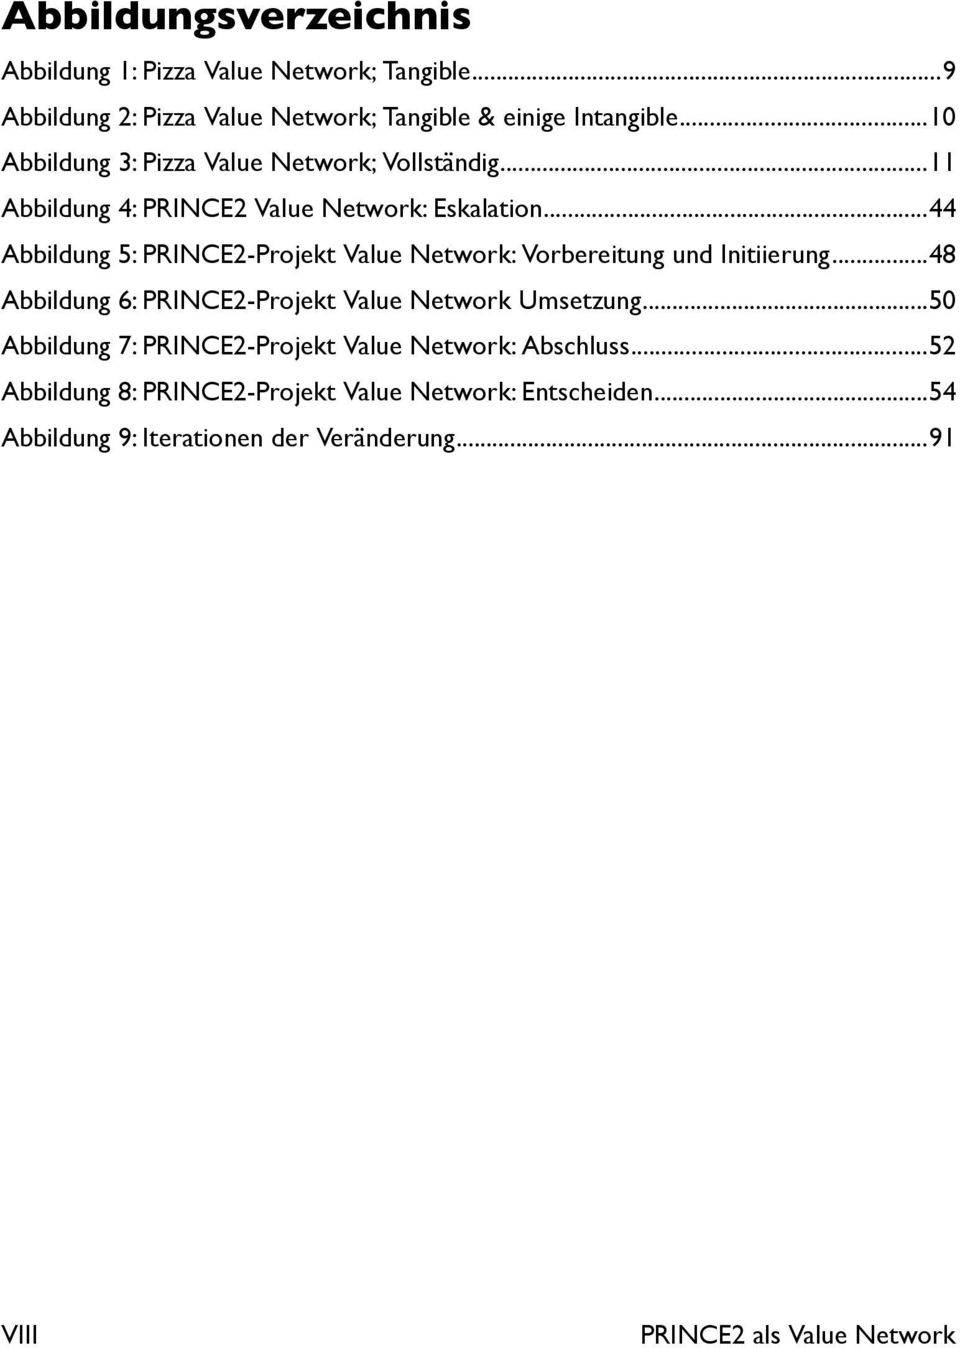 ..44 Abbildung 5: PRINCE2-Projekt Value Network: Vorbereitung und Initiierung...48 Abbildung 6: PRINCE2-Projekt Value Network Umsetzung.